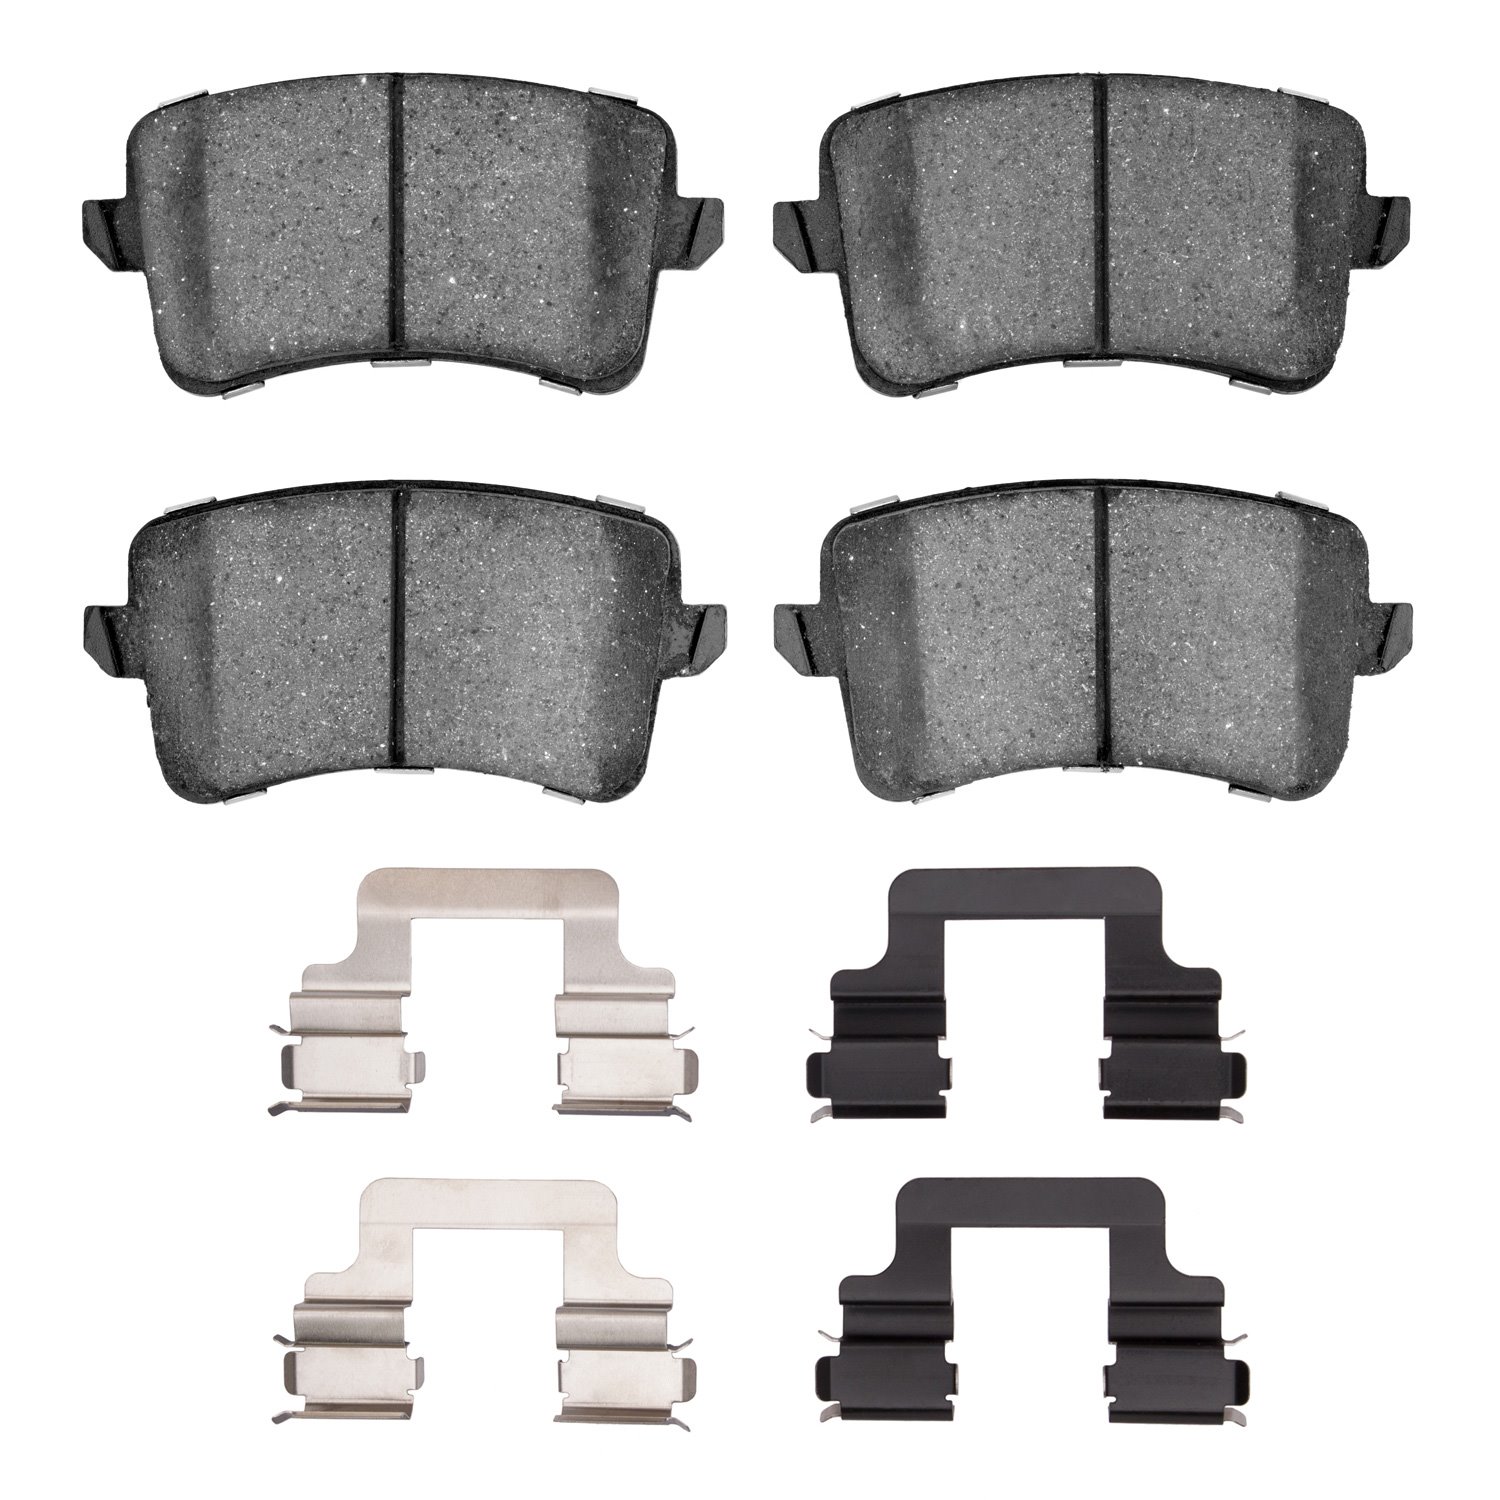 1551-1386-02 5000 Advanced Low-Metallic Brake Pads & Hardware Kit, 2008-2017 Audi/Volkswagen, Position: Rear